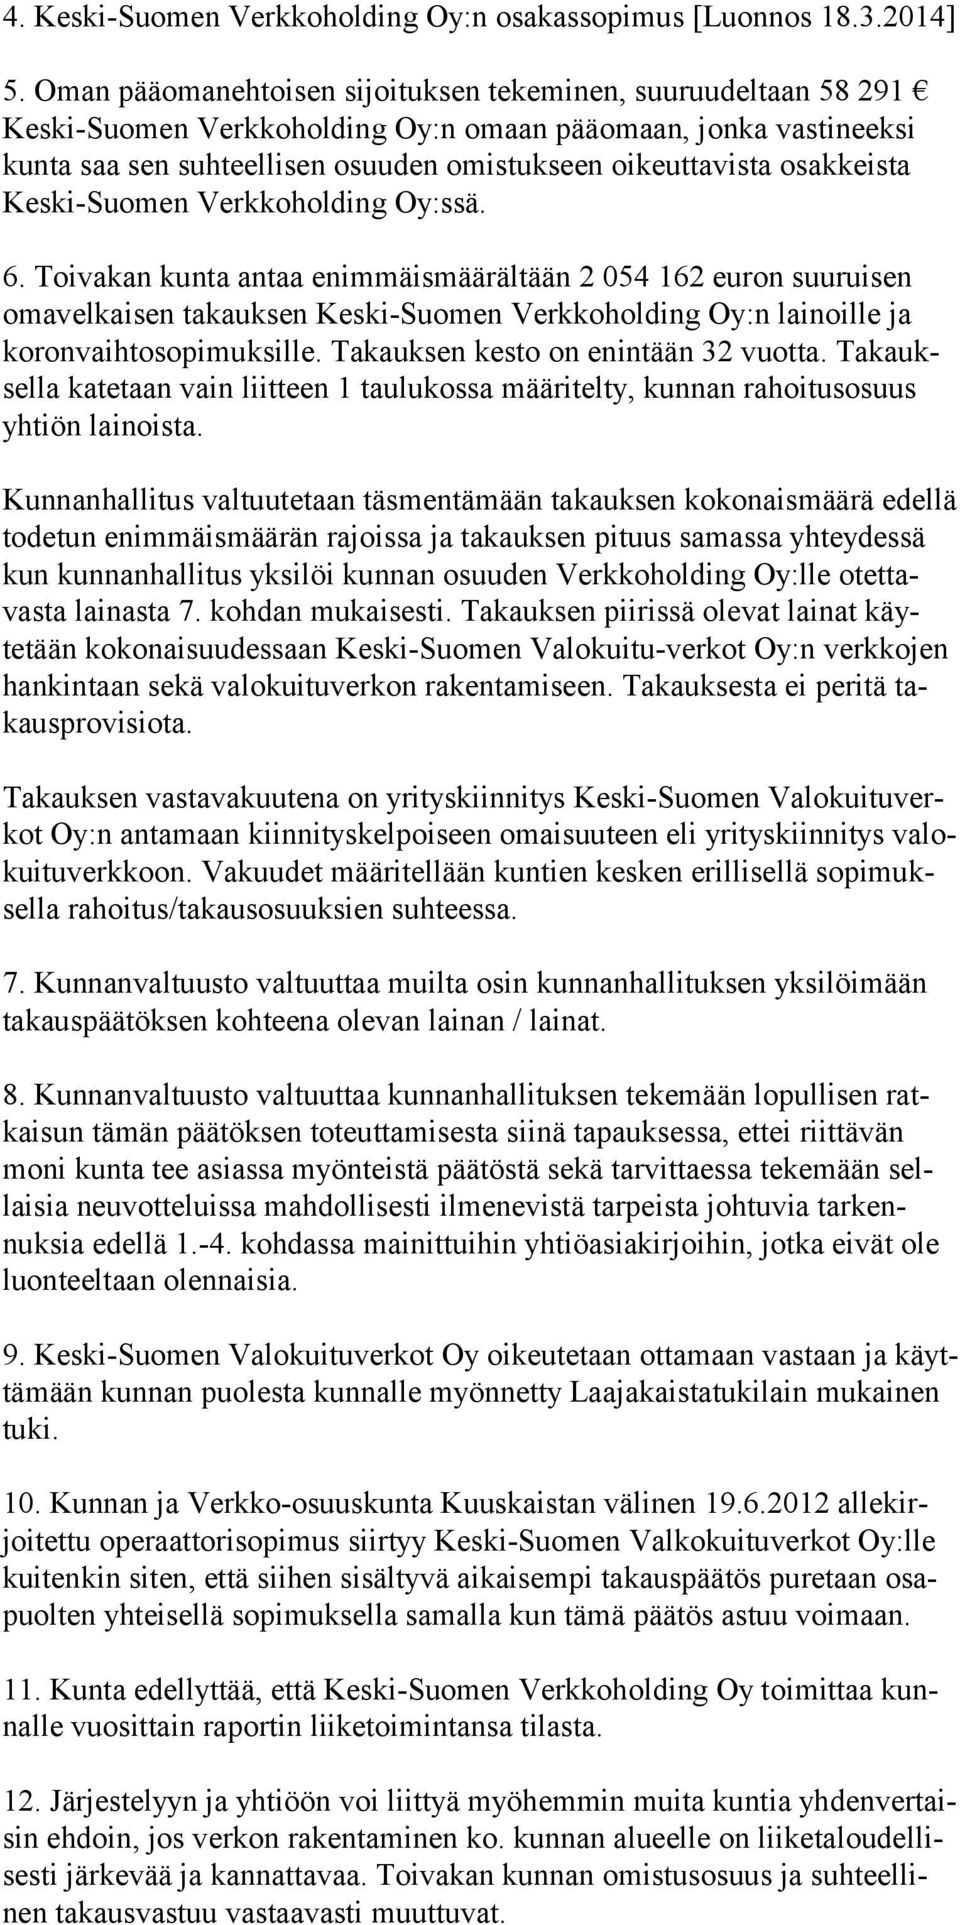 osakkeista Keski-Suomen Verkkoholding Oy:ssä. 6.